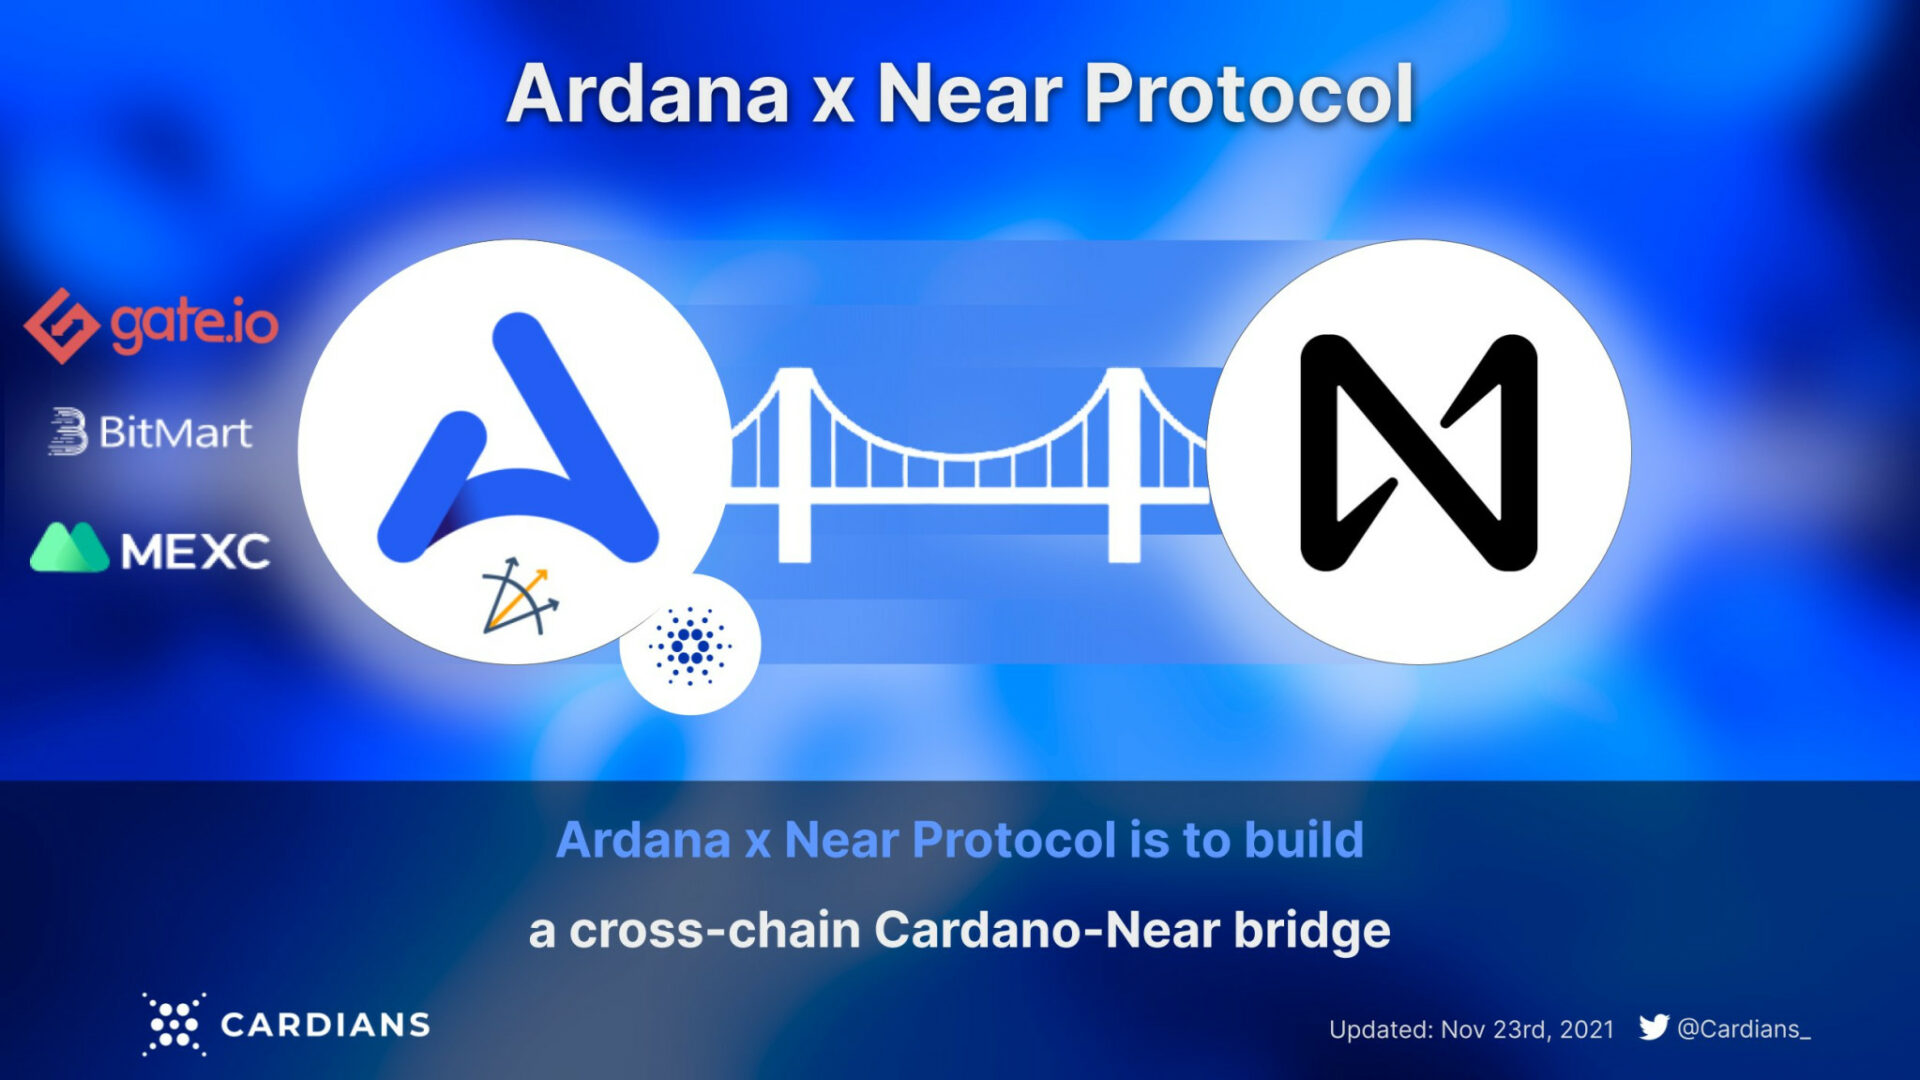 Ardana hợp tác với Near để xây dựng cầu nối